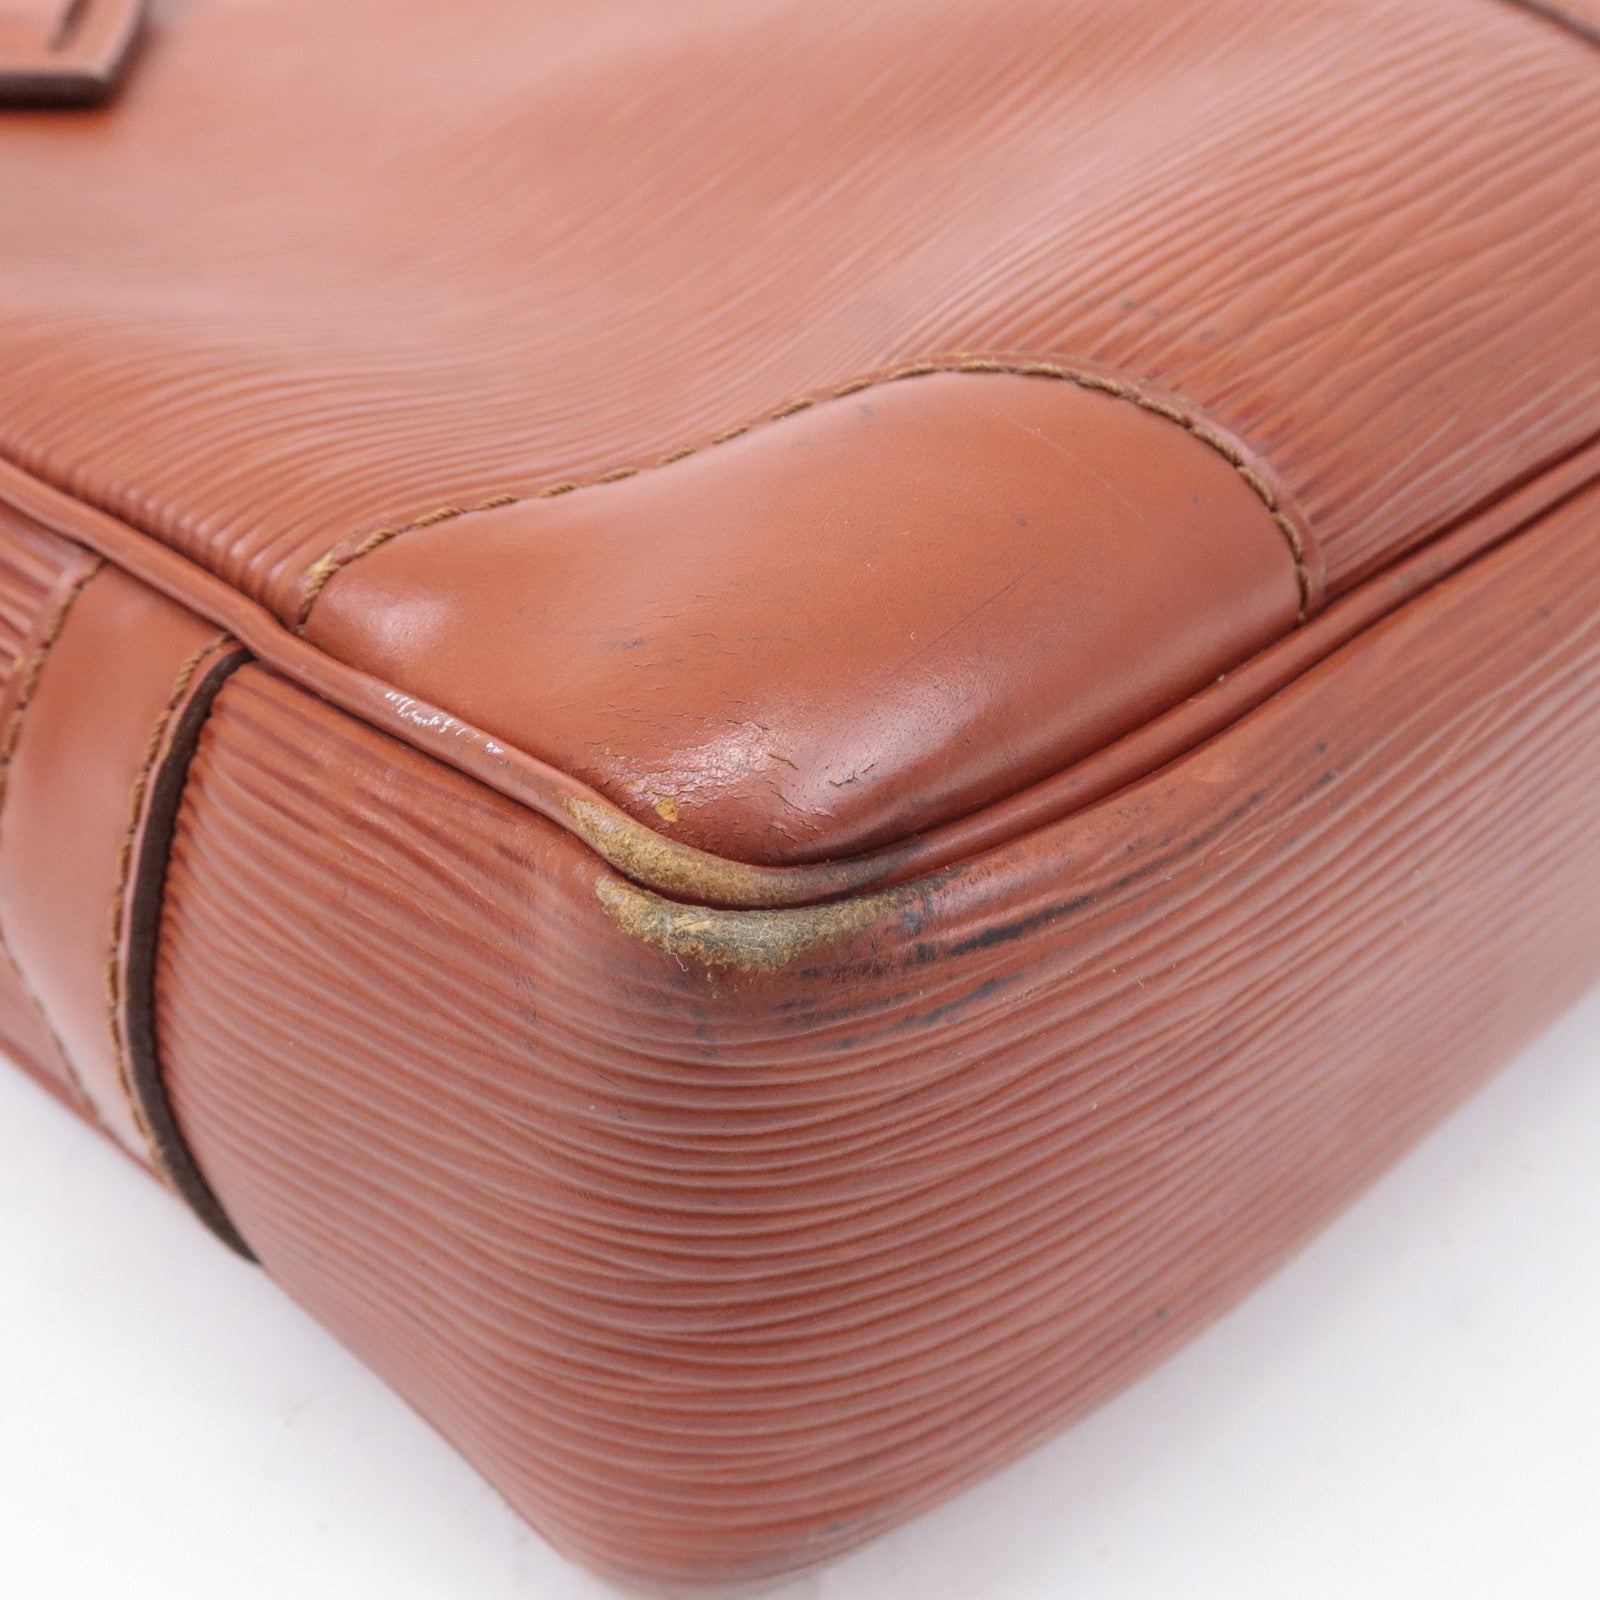 Authentic Louis Vuitton Monogram Business Bag Porte Documents M53338  Briefcase B